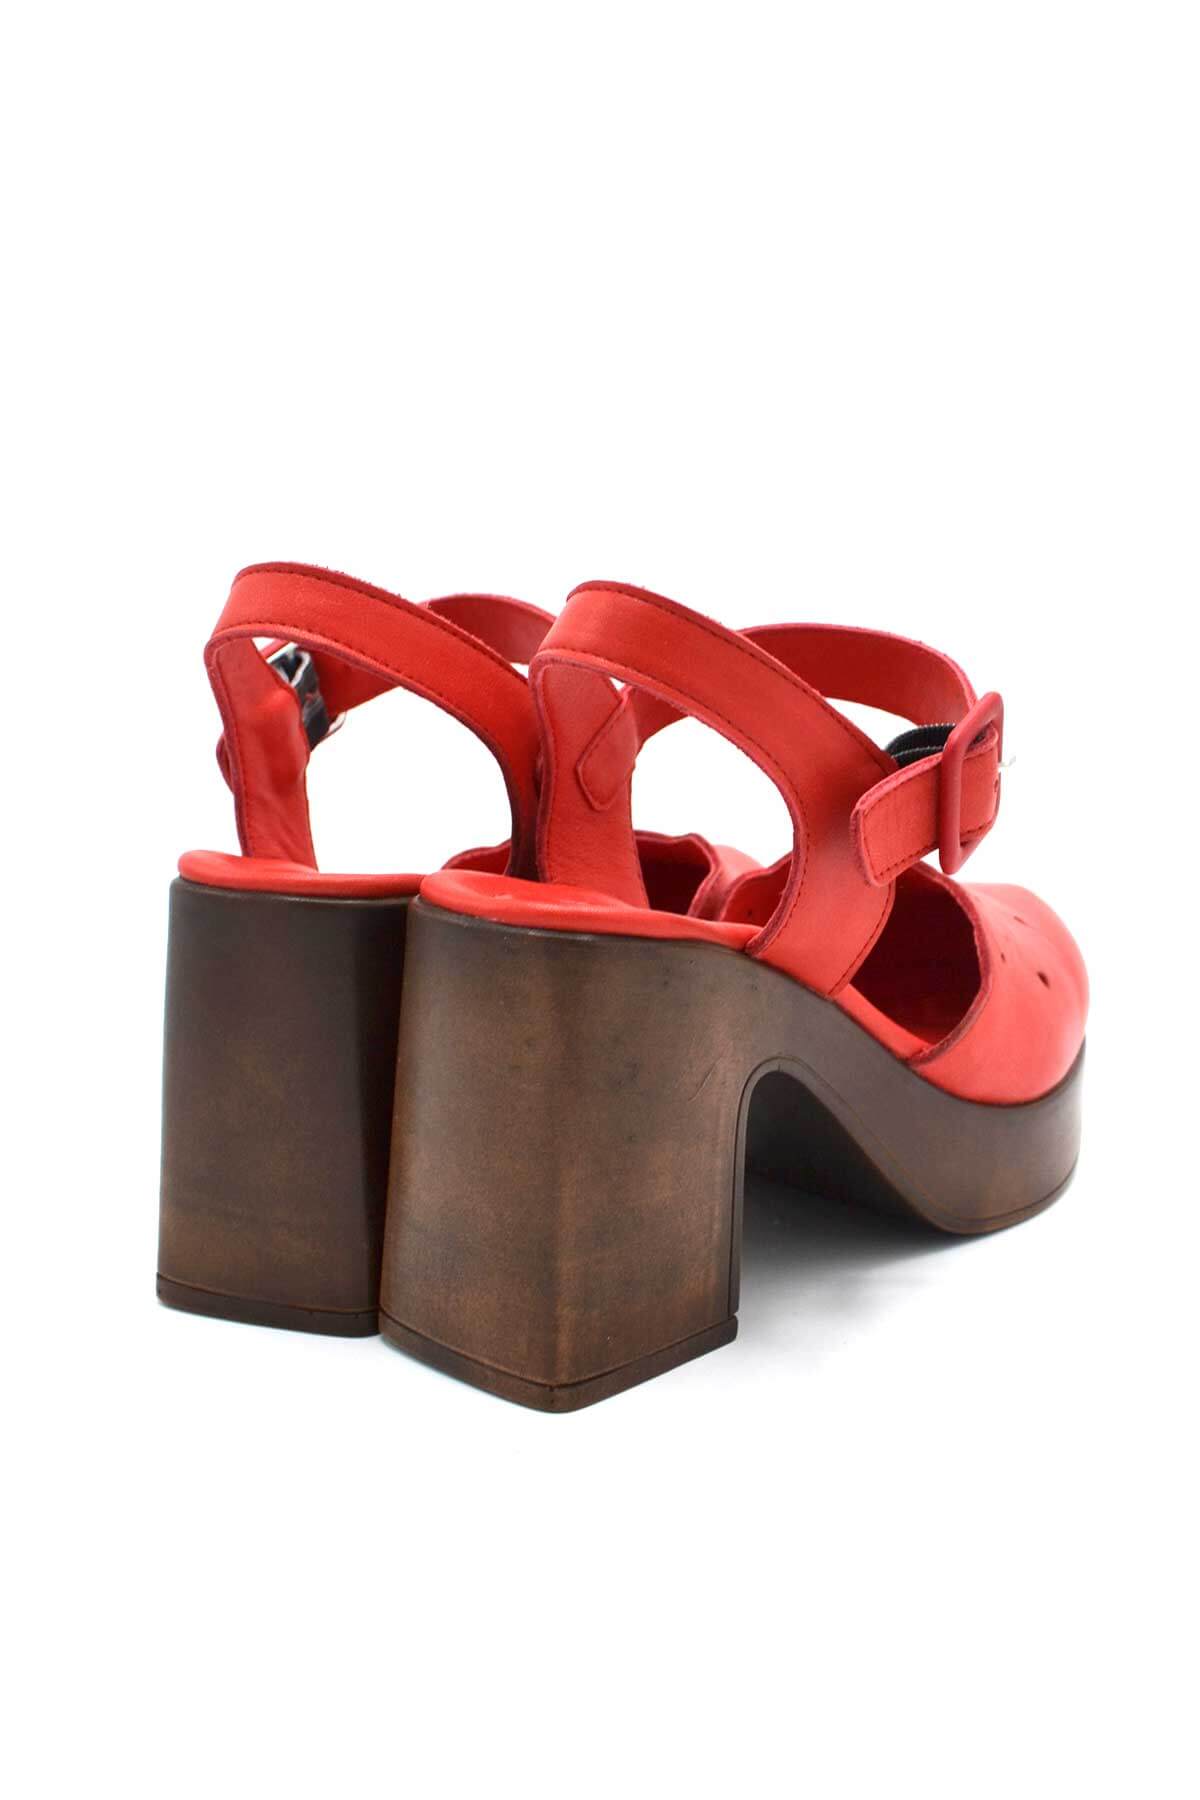 Kadın Apartman Topuk Deri Sandalet Kırmızı 2217001Y